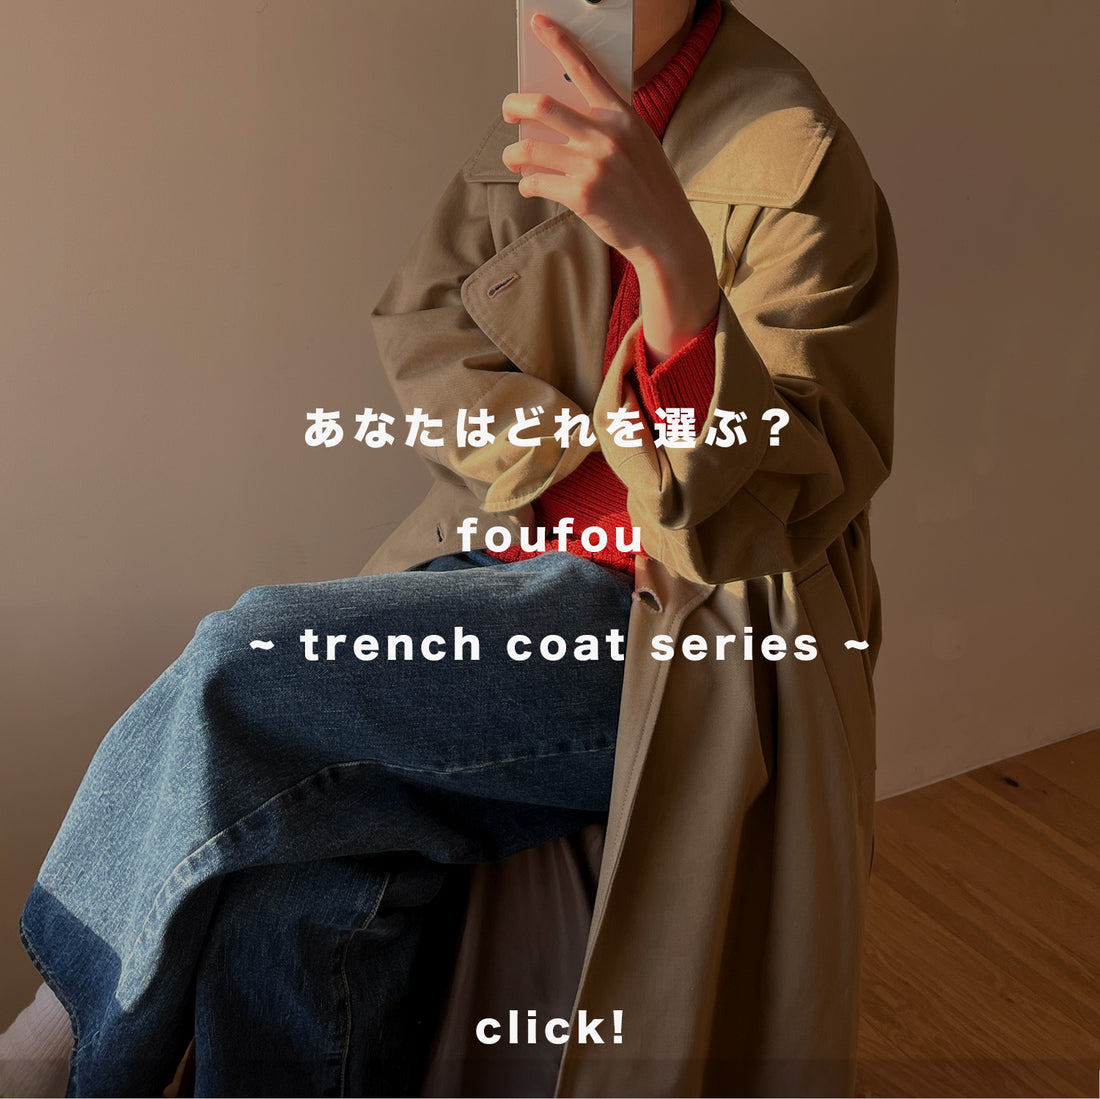 あなたはどれを選ぶ？~ foufou  trench coat series ~